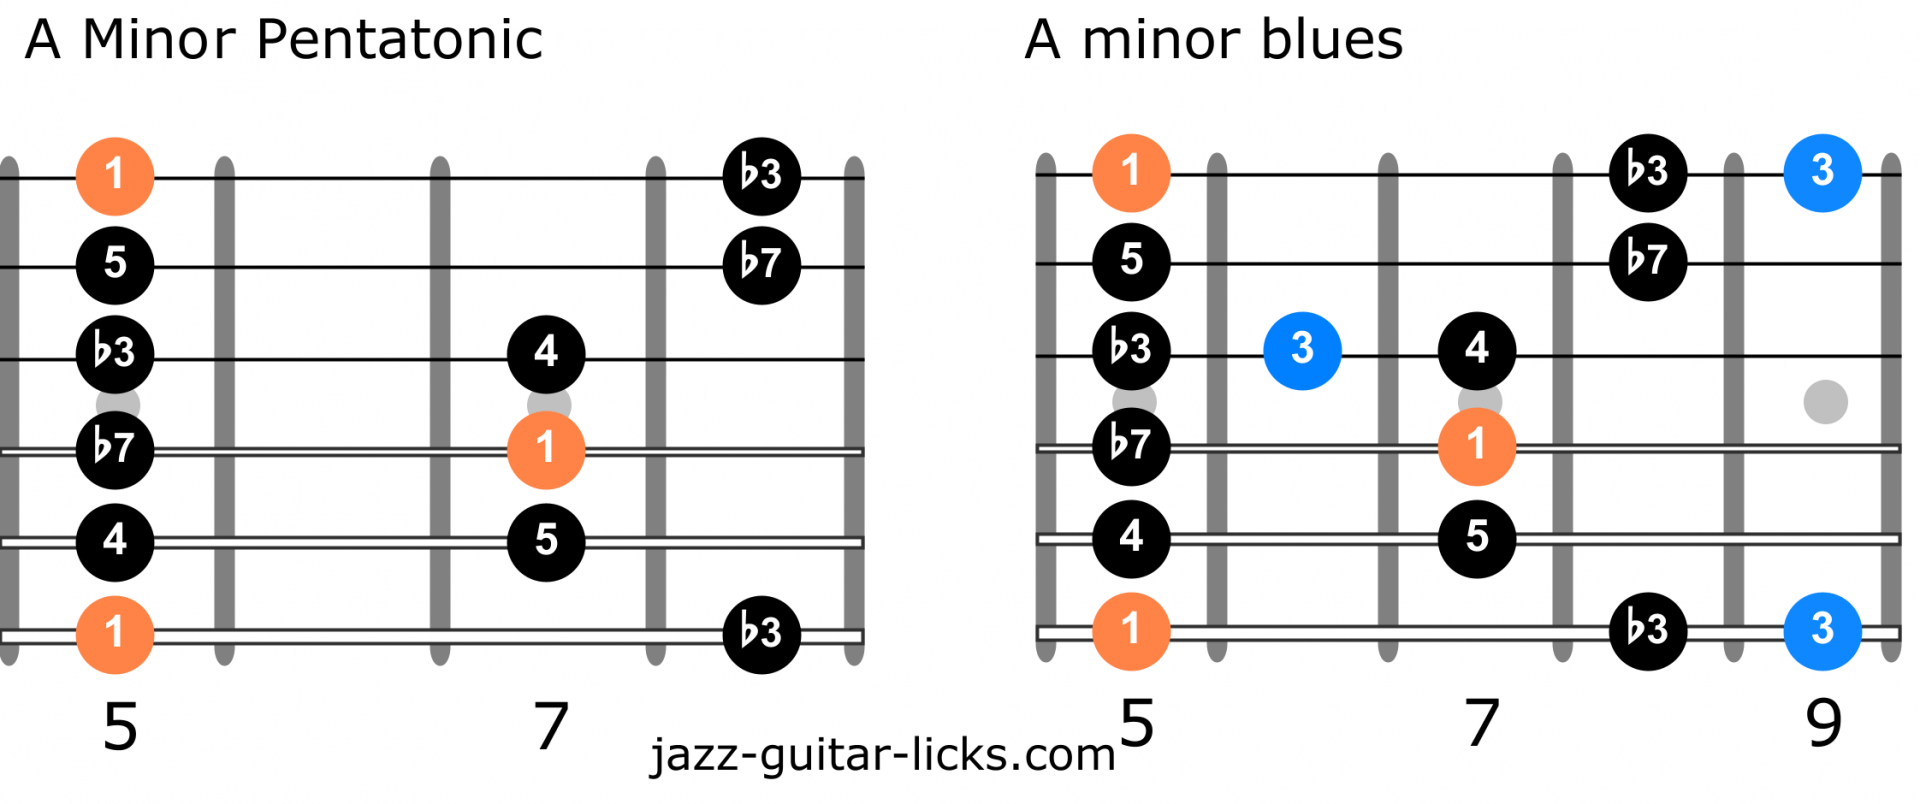 Minor pentatonic scale versus minor blues